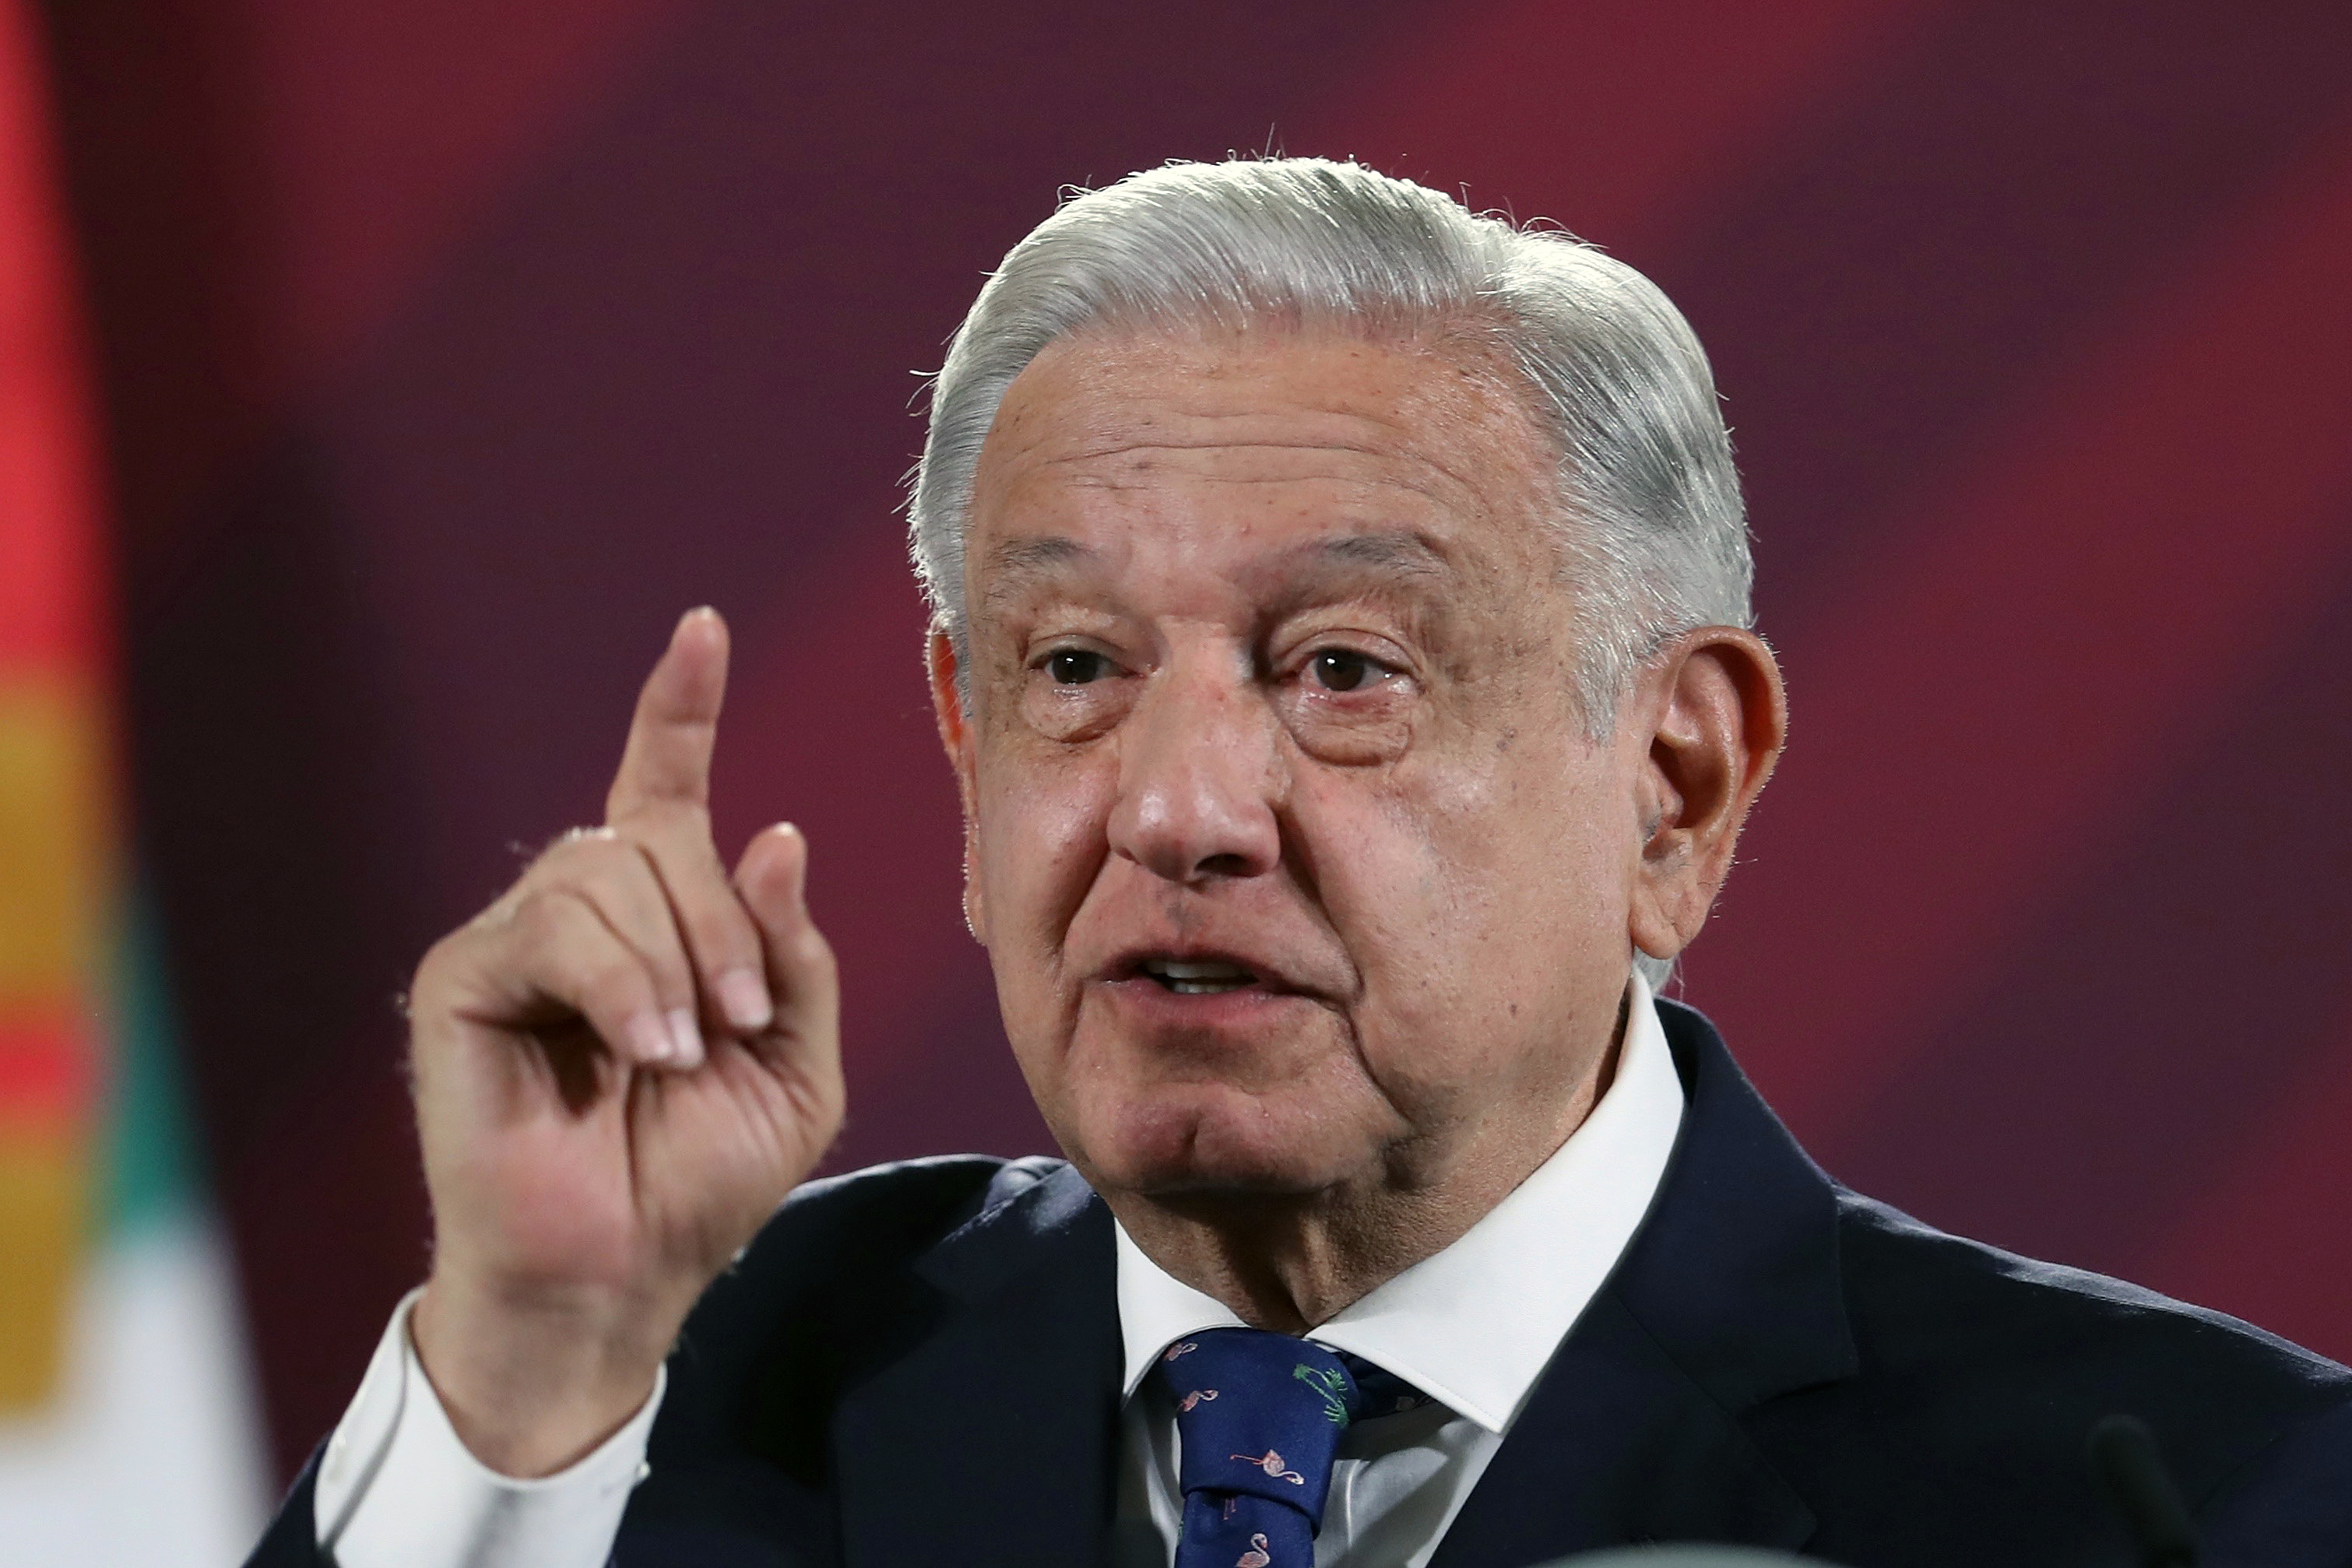 El presidente de México, Andrés Manuel López Obrador, reconoció este martes que existen disputas en la frontera sur por narcotráfico, pero también criticó a la "derecha" por esparcir estas disputas como "propagandas". (Foto Prensa Libre: EFE/Sáshenka Gutiérrez)